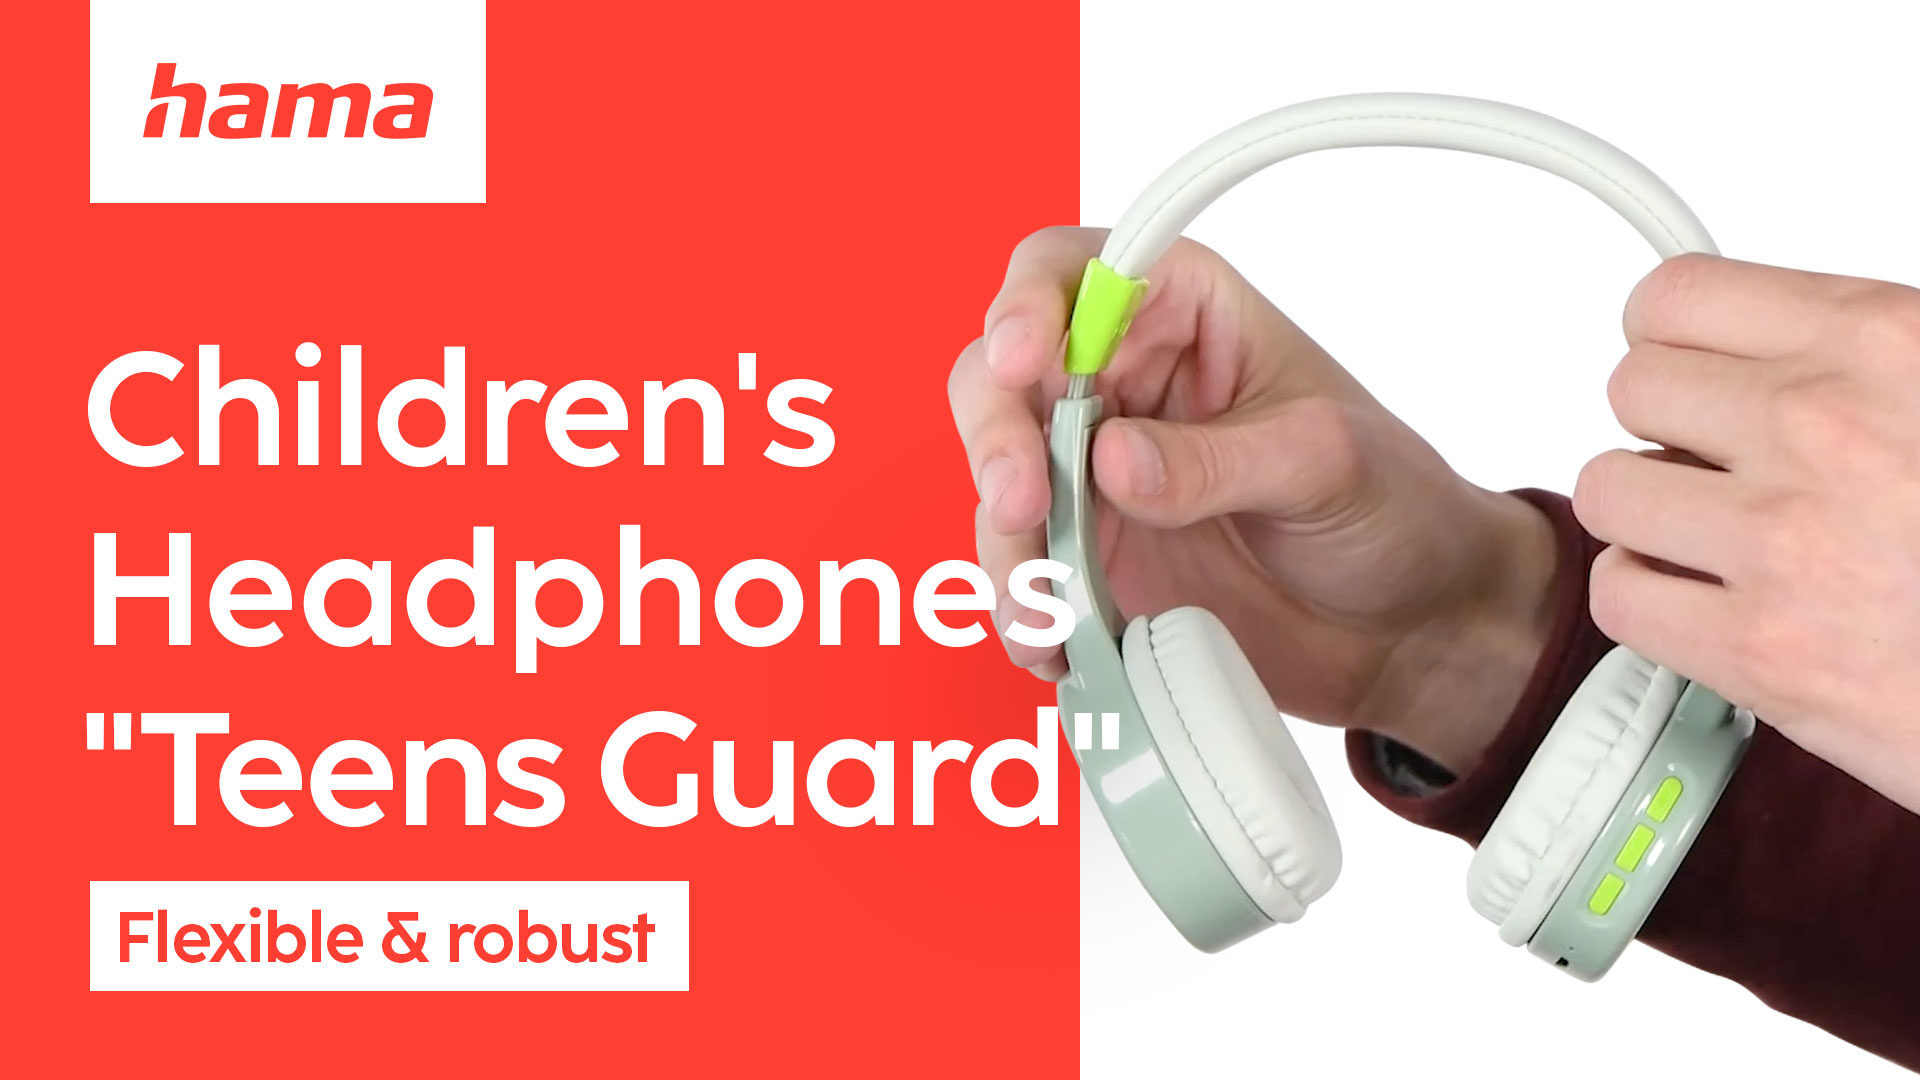 Hama "Teens Guard" Children's Headphones